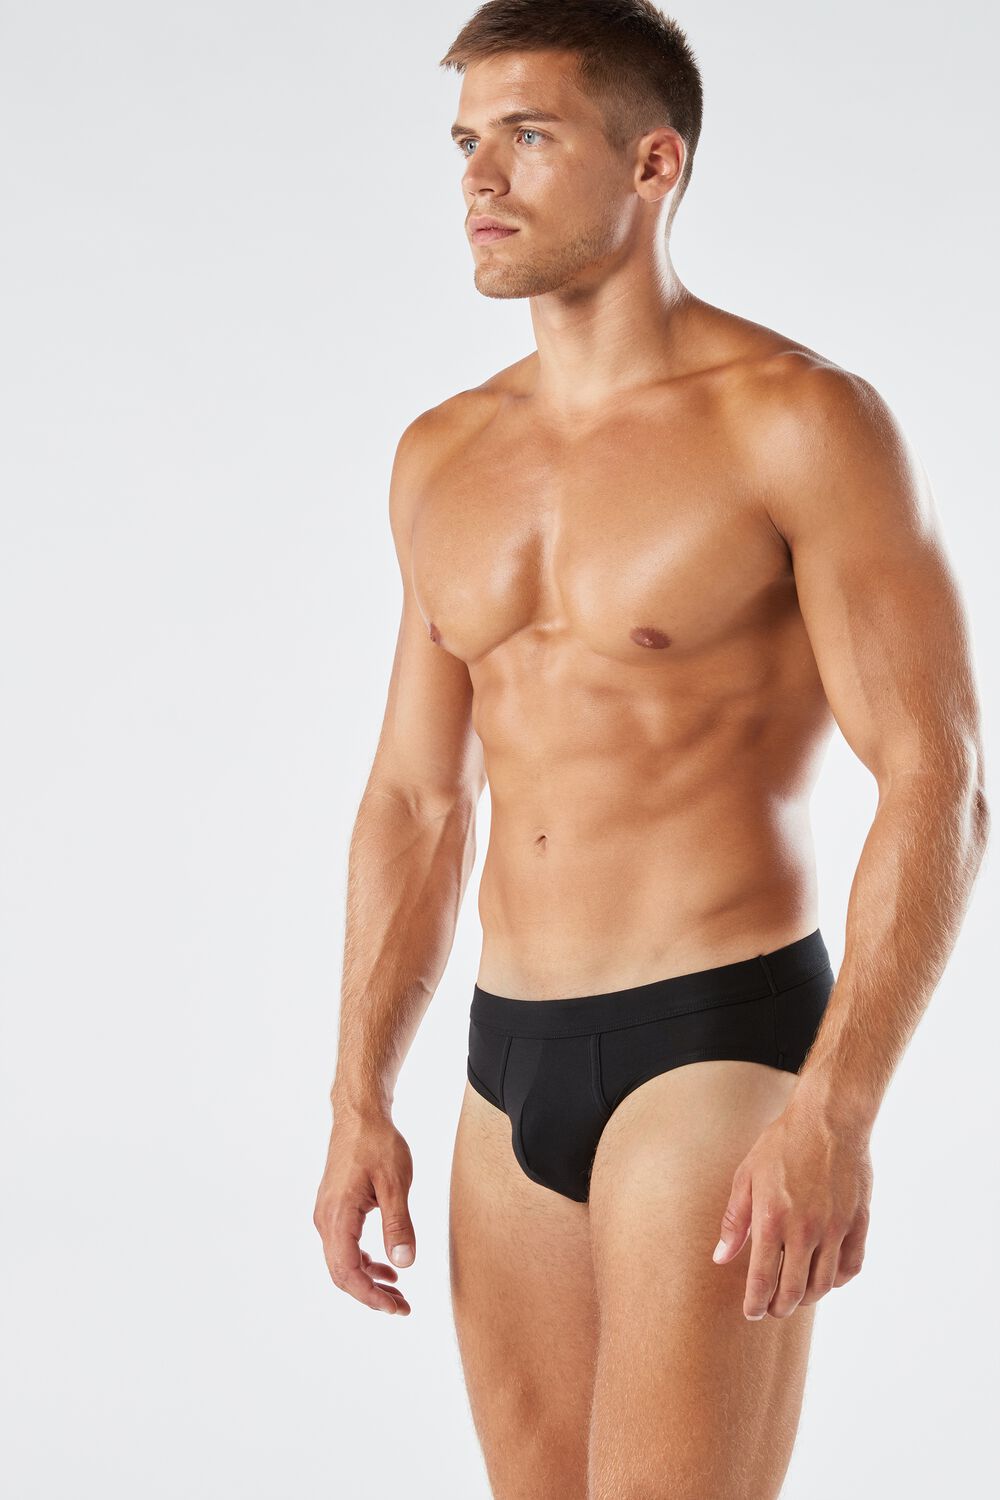 Italian Elgance in Men's Underwear – intimissimi – Underwear News Briefs